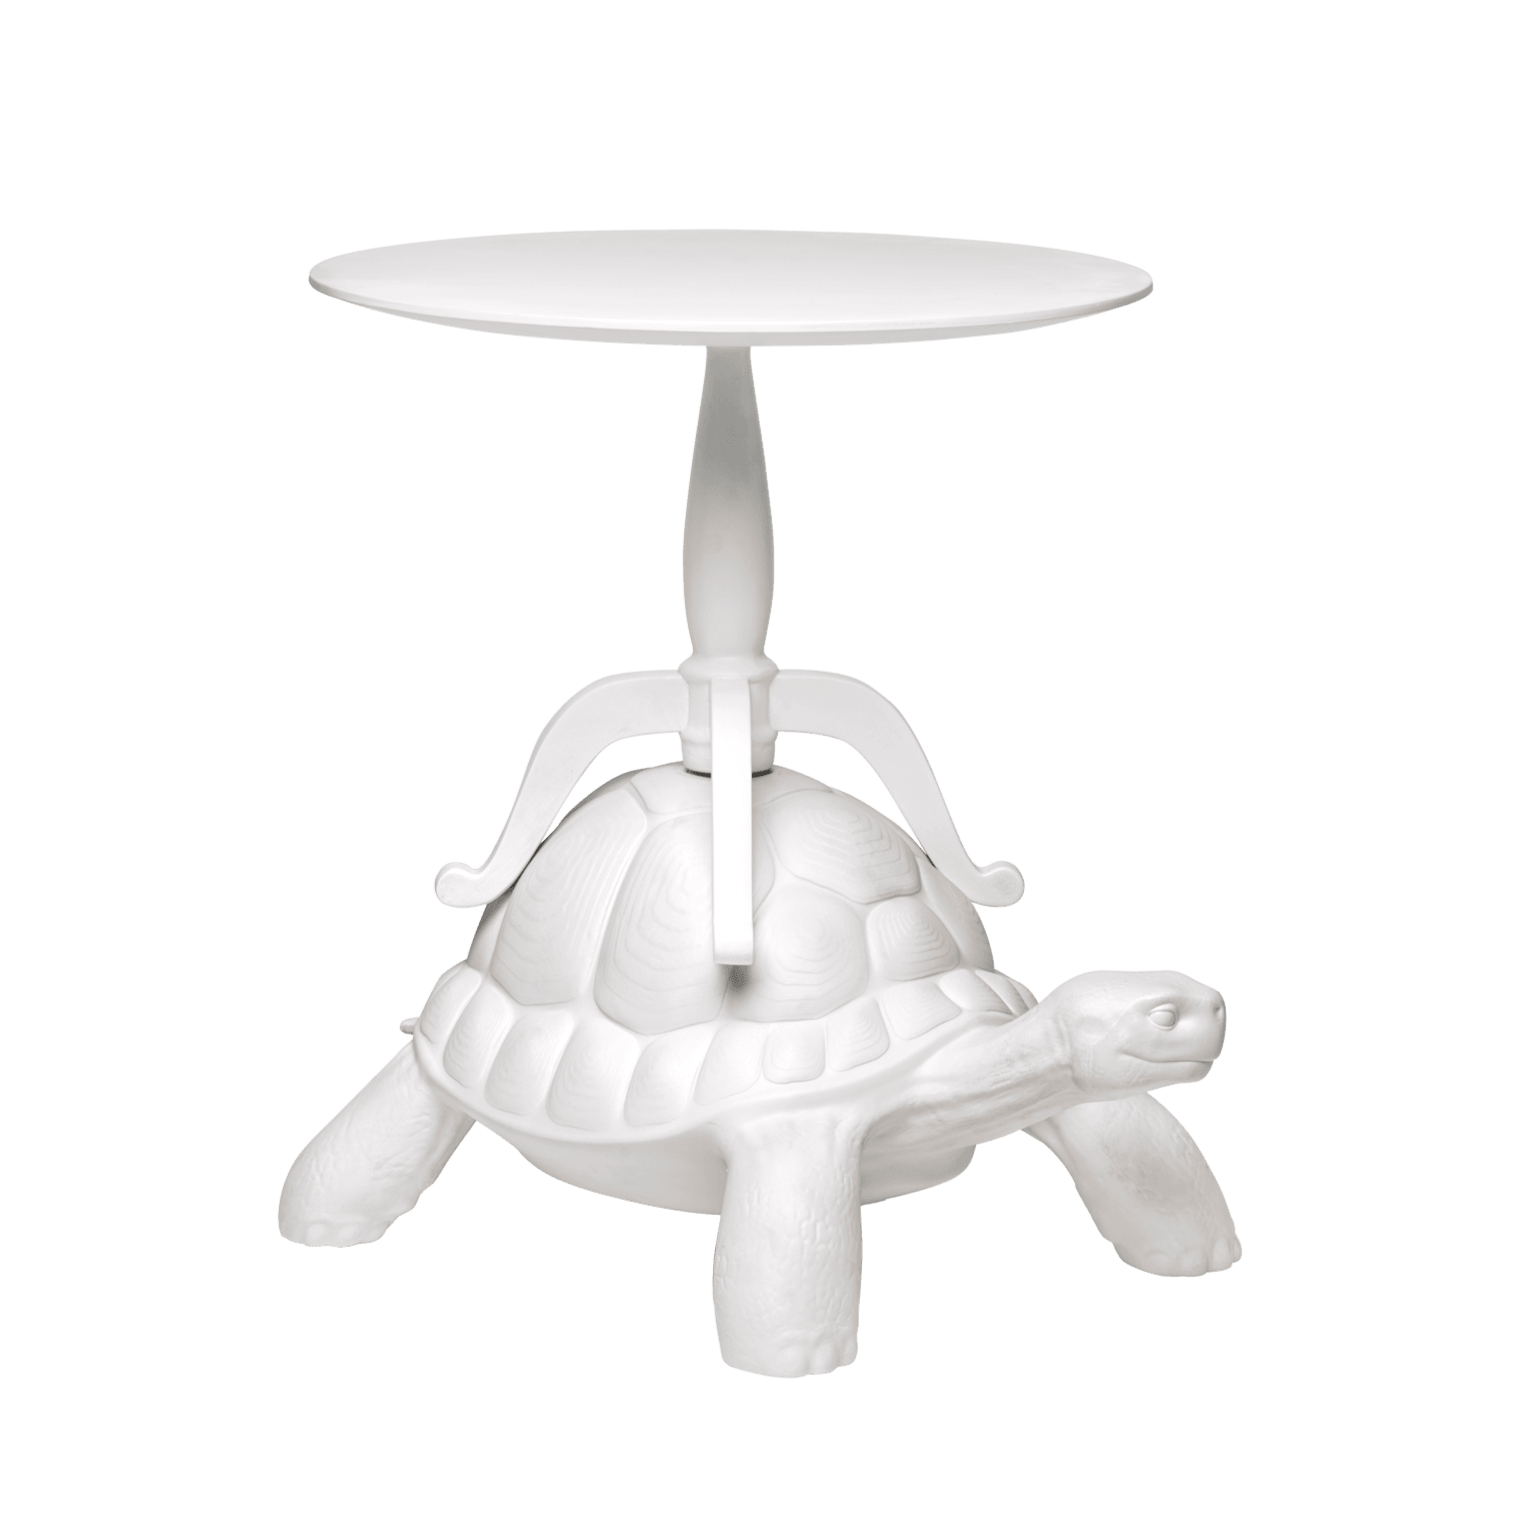 Ten sympatyczny, wielofunkcyjny żółw, to kolejny niezwykły projekt Marcantonio. Wytrzymały pancerz żółwia utrzymuje elegancką poduszkę, która idealnie sprawdzi się jako nietuzinkowe siedzisko. 